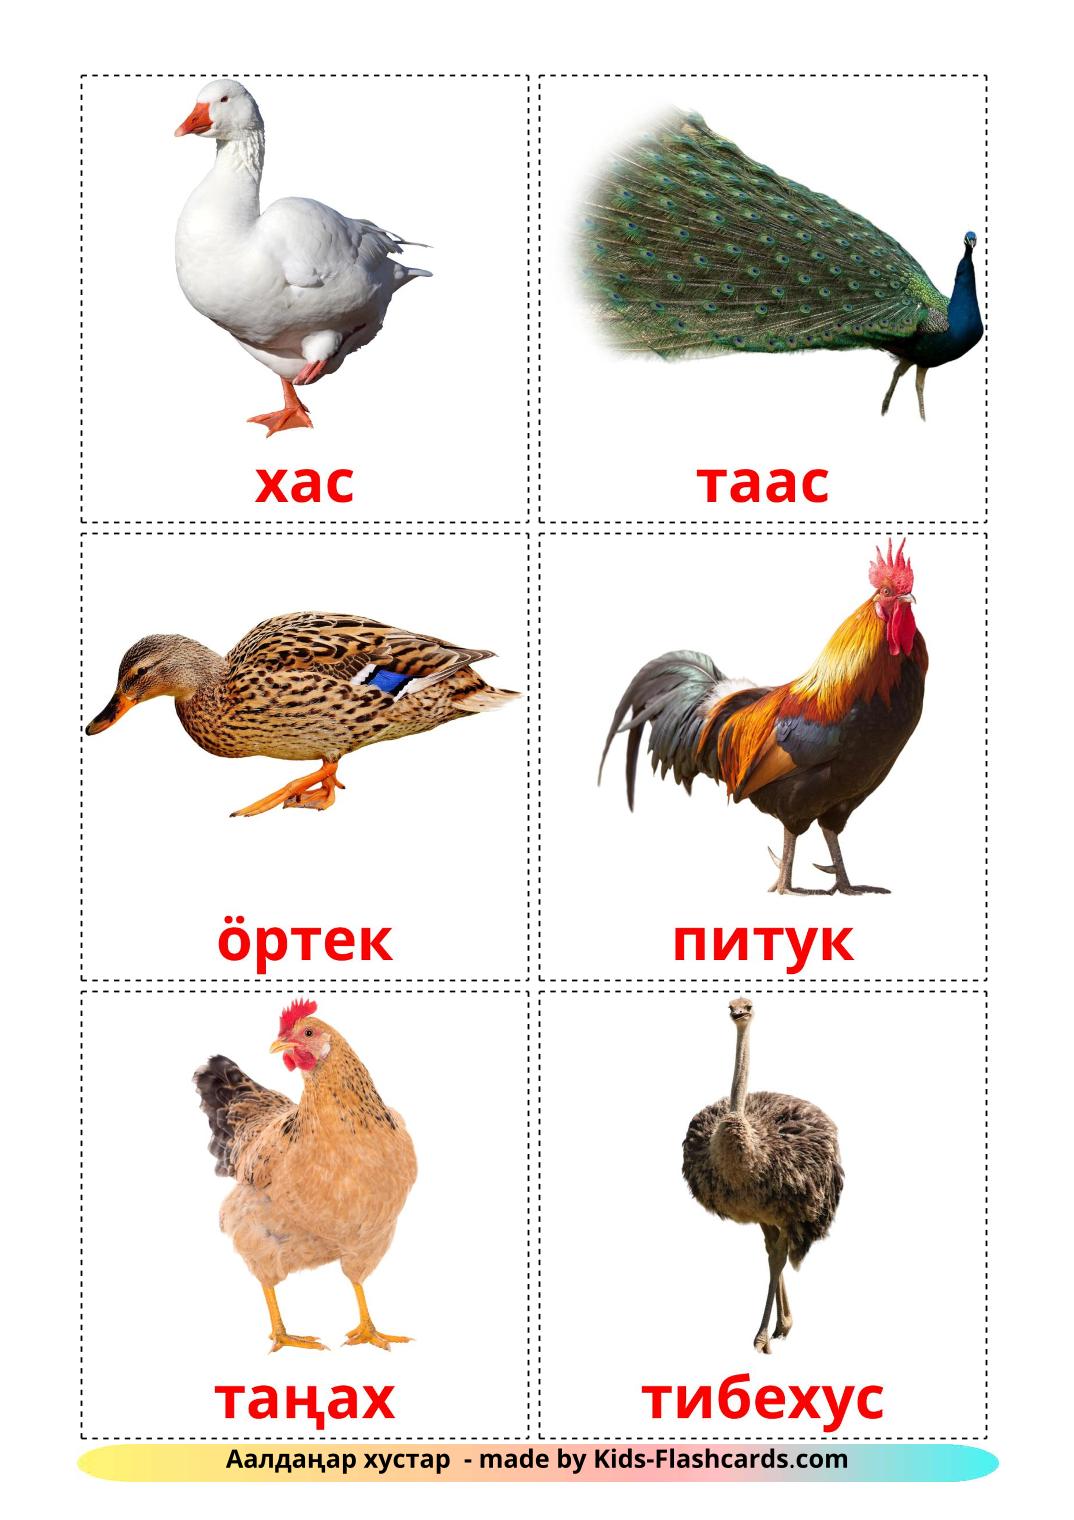 Les Oiseaux de Ferme - 11 Flashcards kirghize imprimables gratuitement